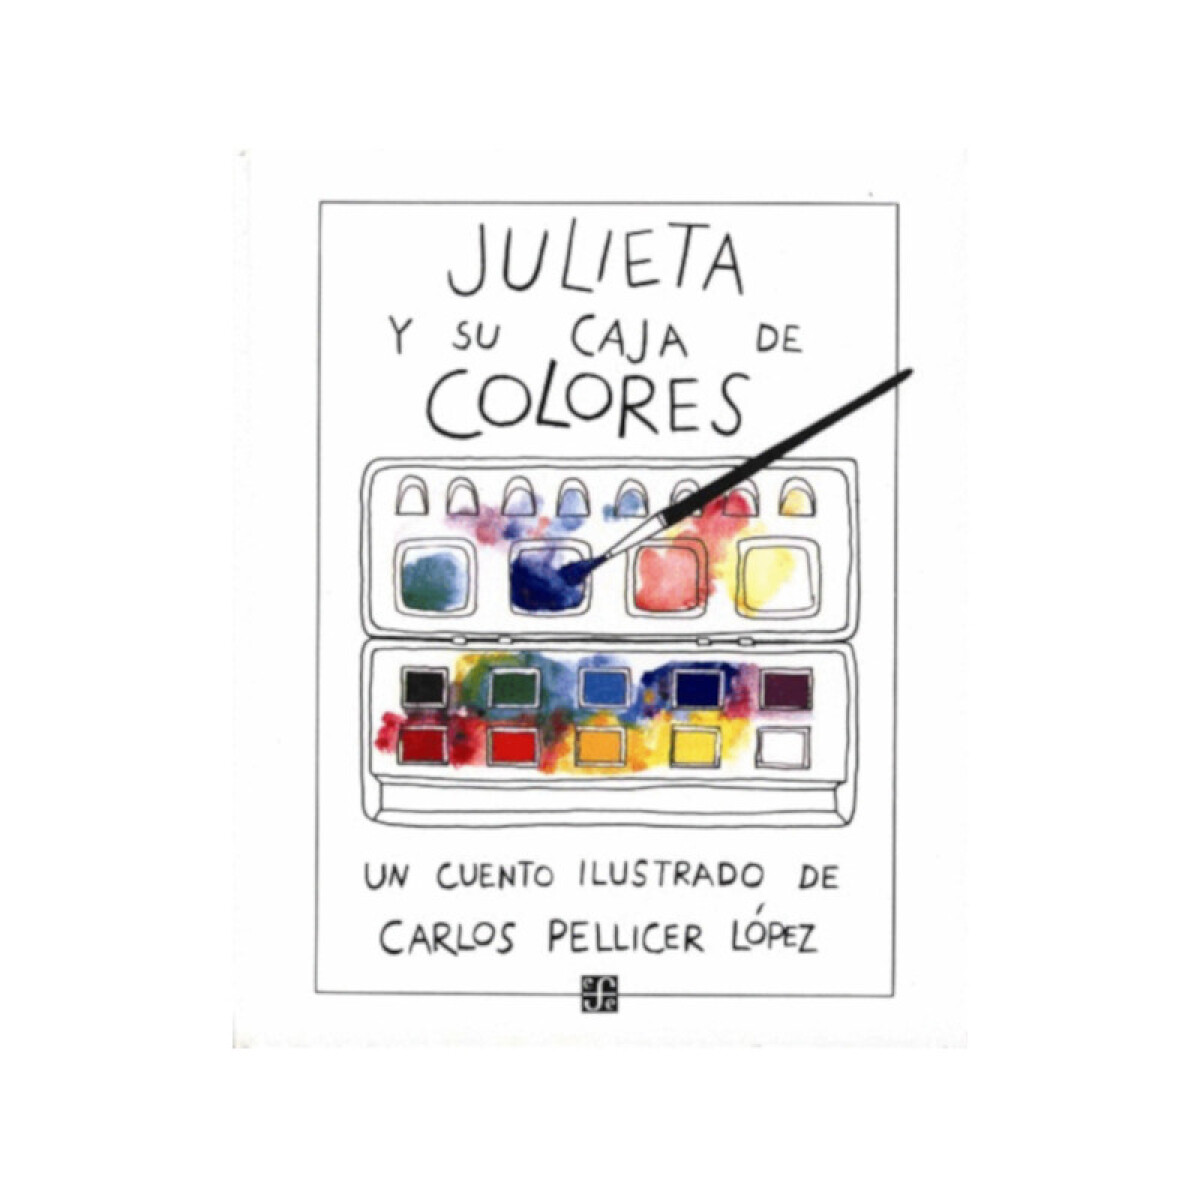 Julieta y su caja de colores - Carlos Pellicer López 